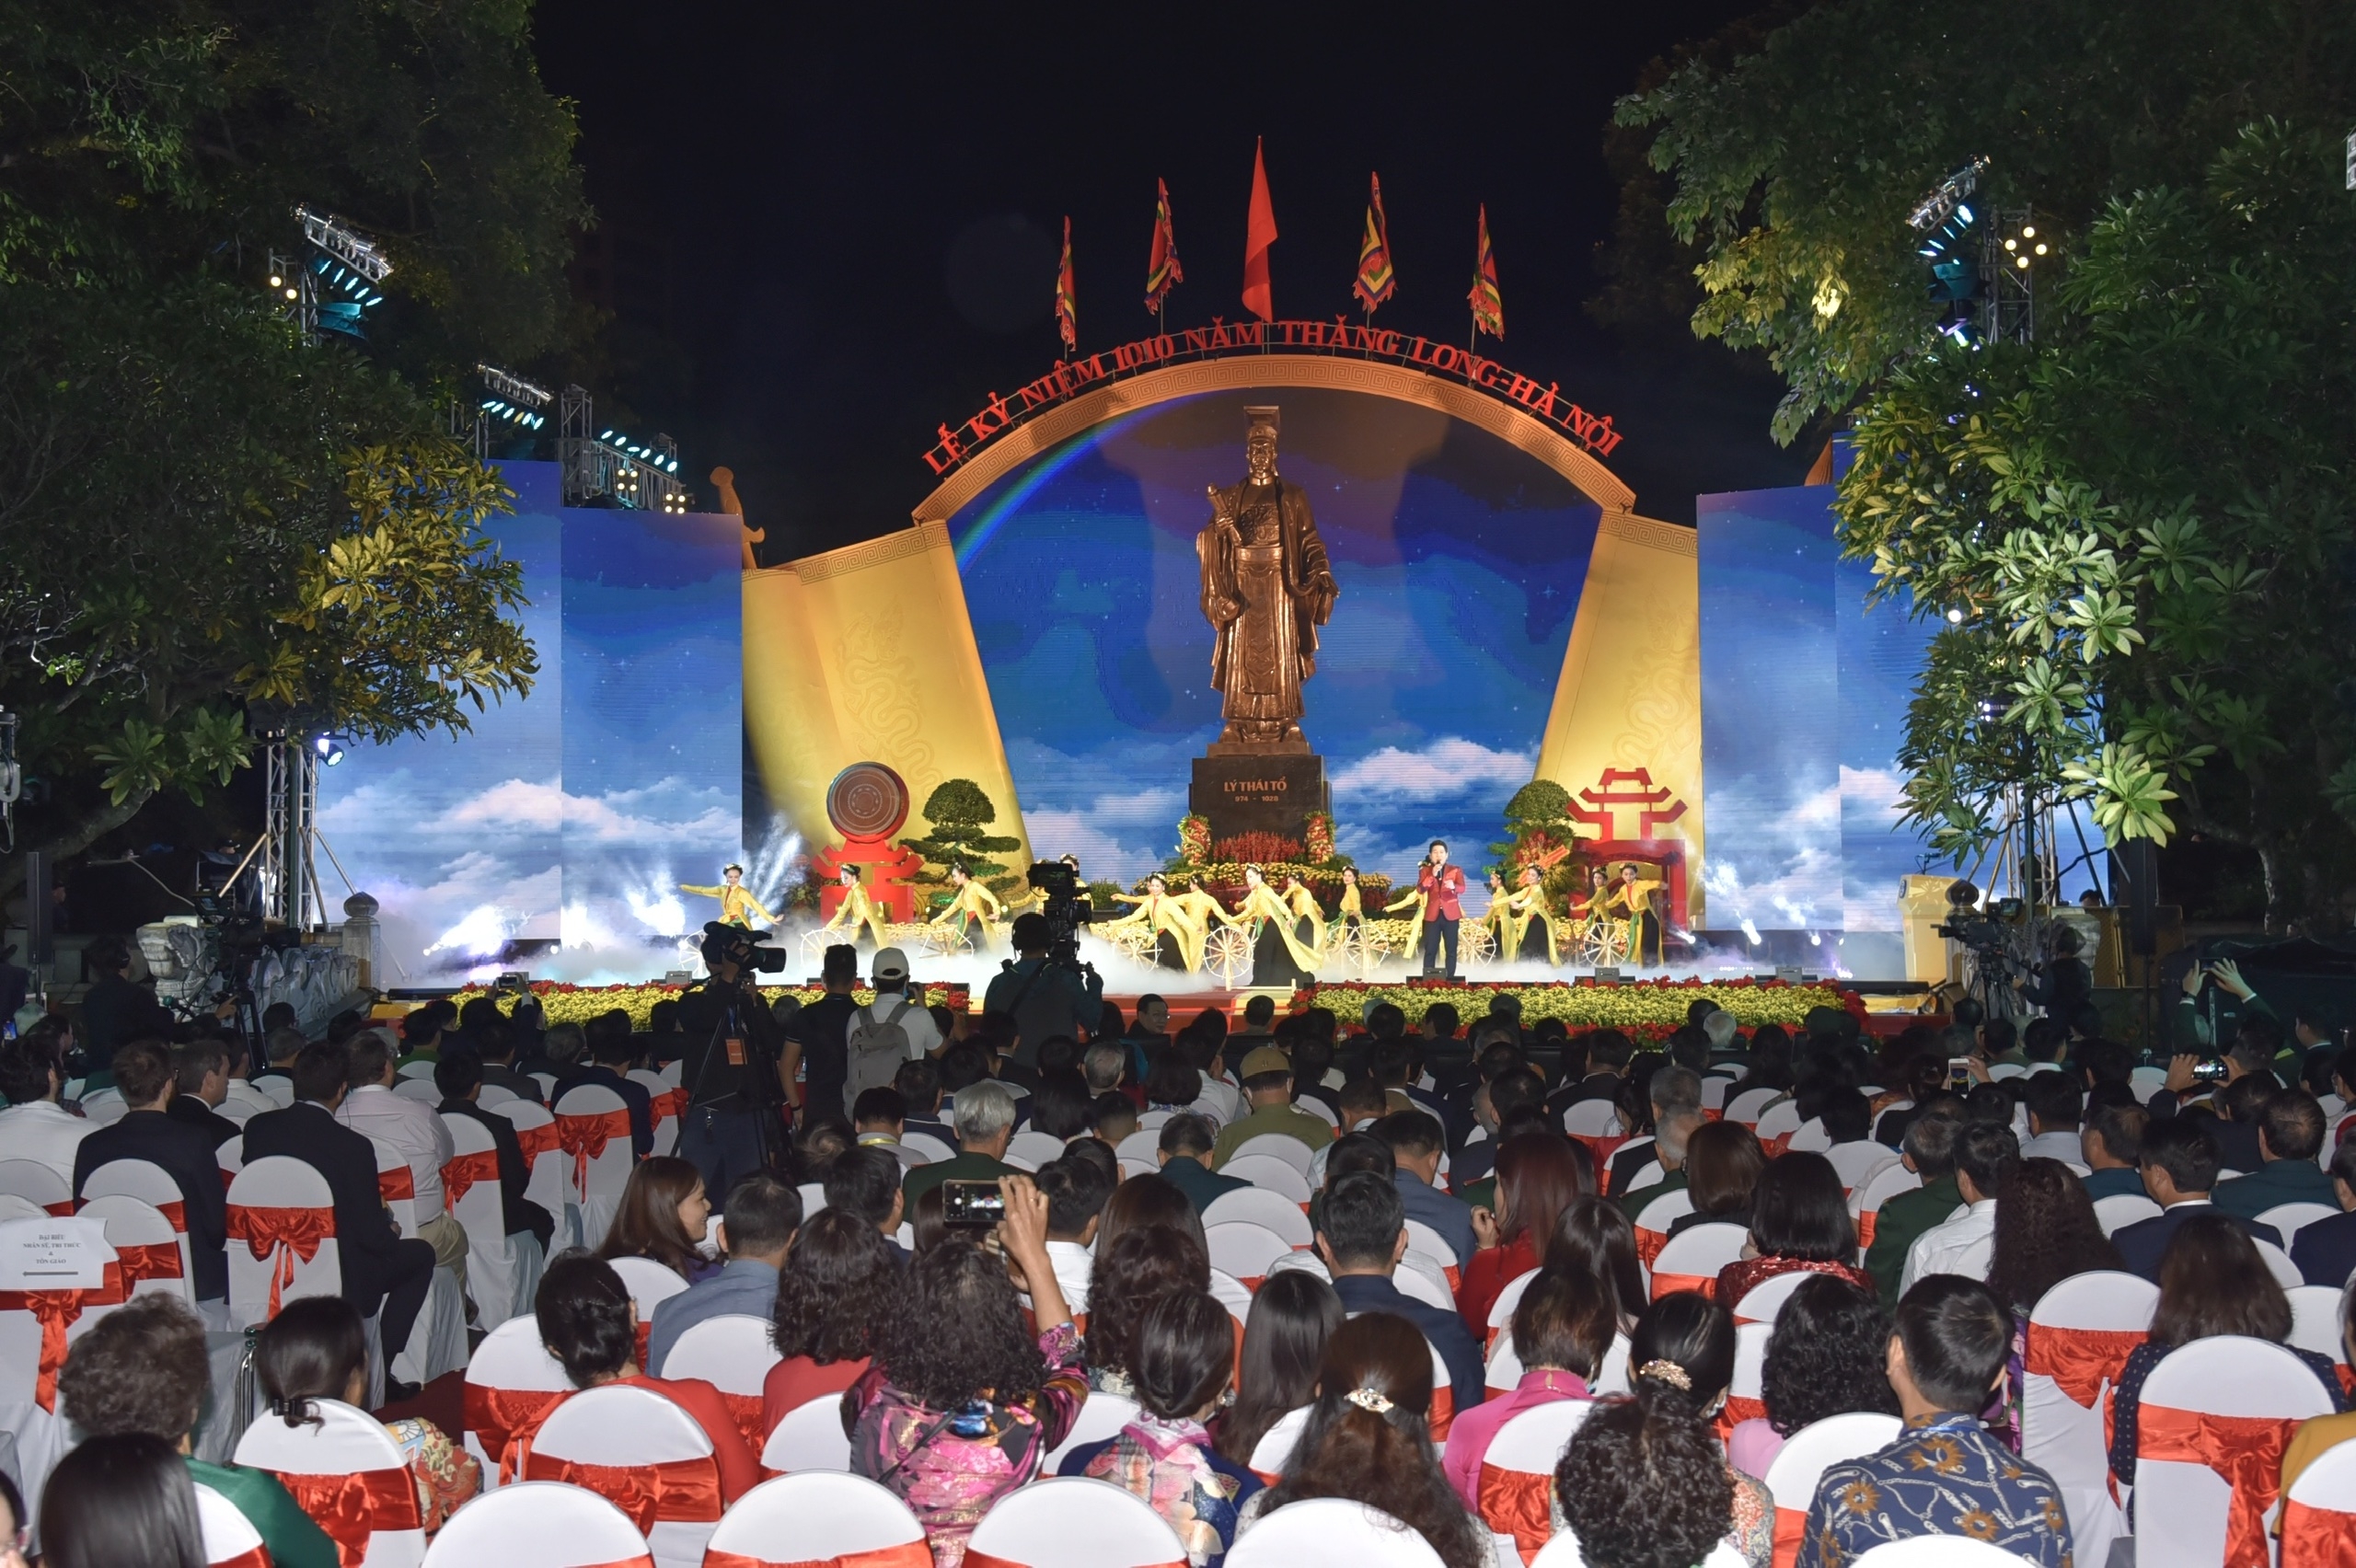 Hà Nội trọng thể tổ chức Lễ kỷ niệm 1010 năm Thăng Long - Hà Nội